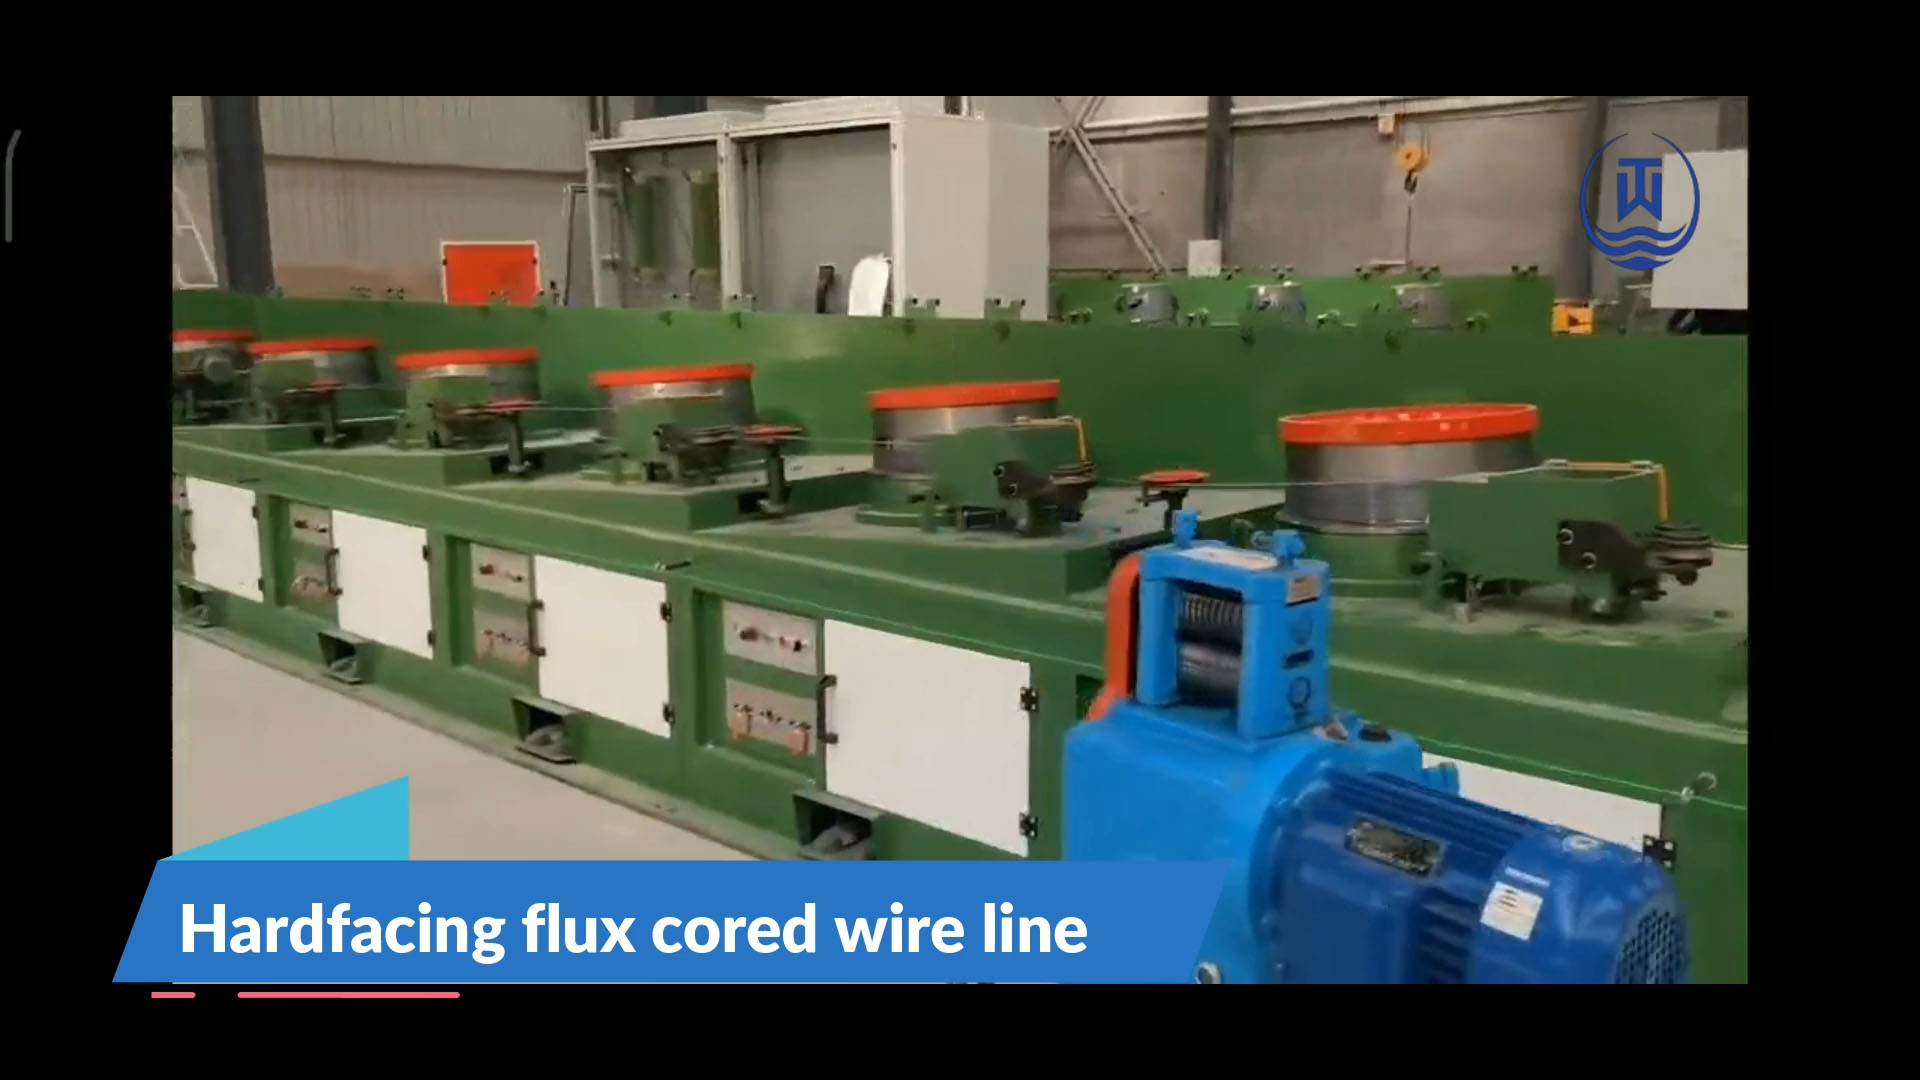 Linha de fio fluxado de revestimento duro usando espessura de tira de aço de 0,3 mm ou 0,4 mm